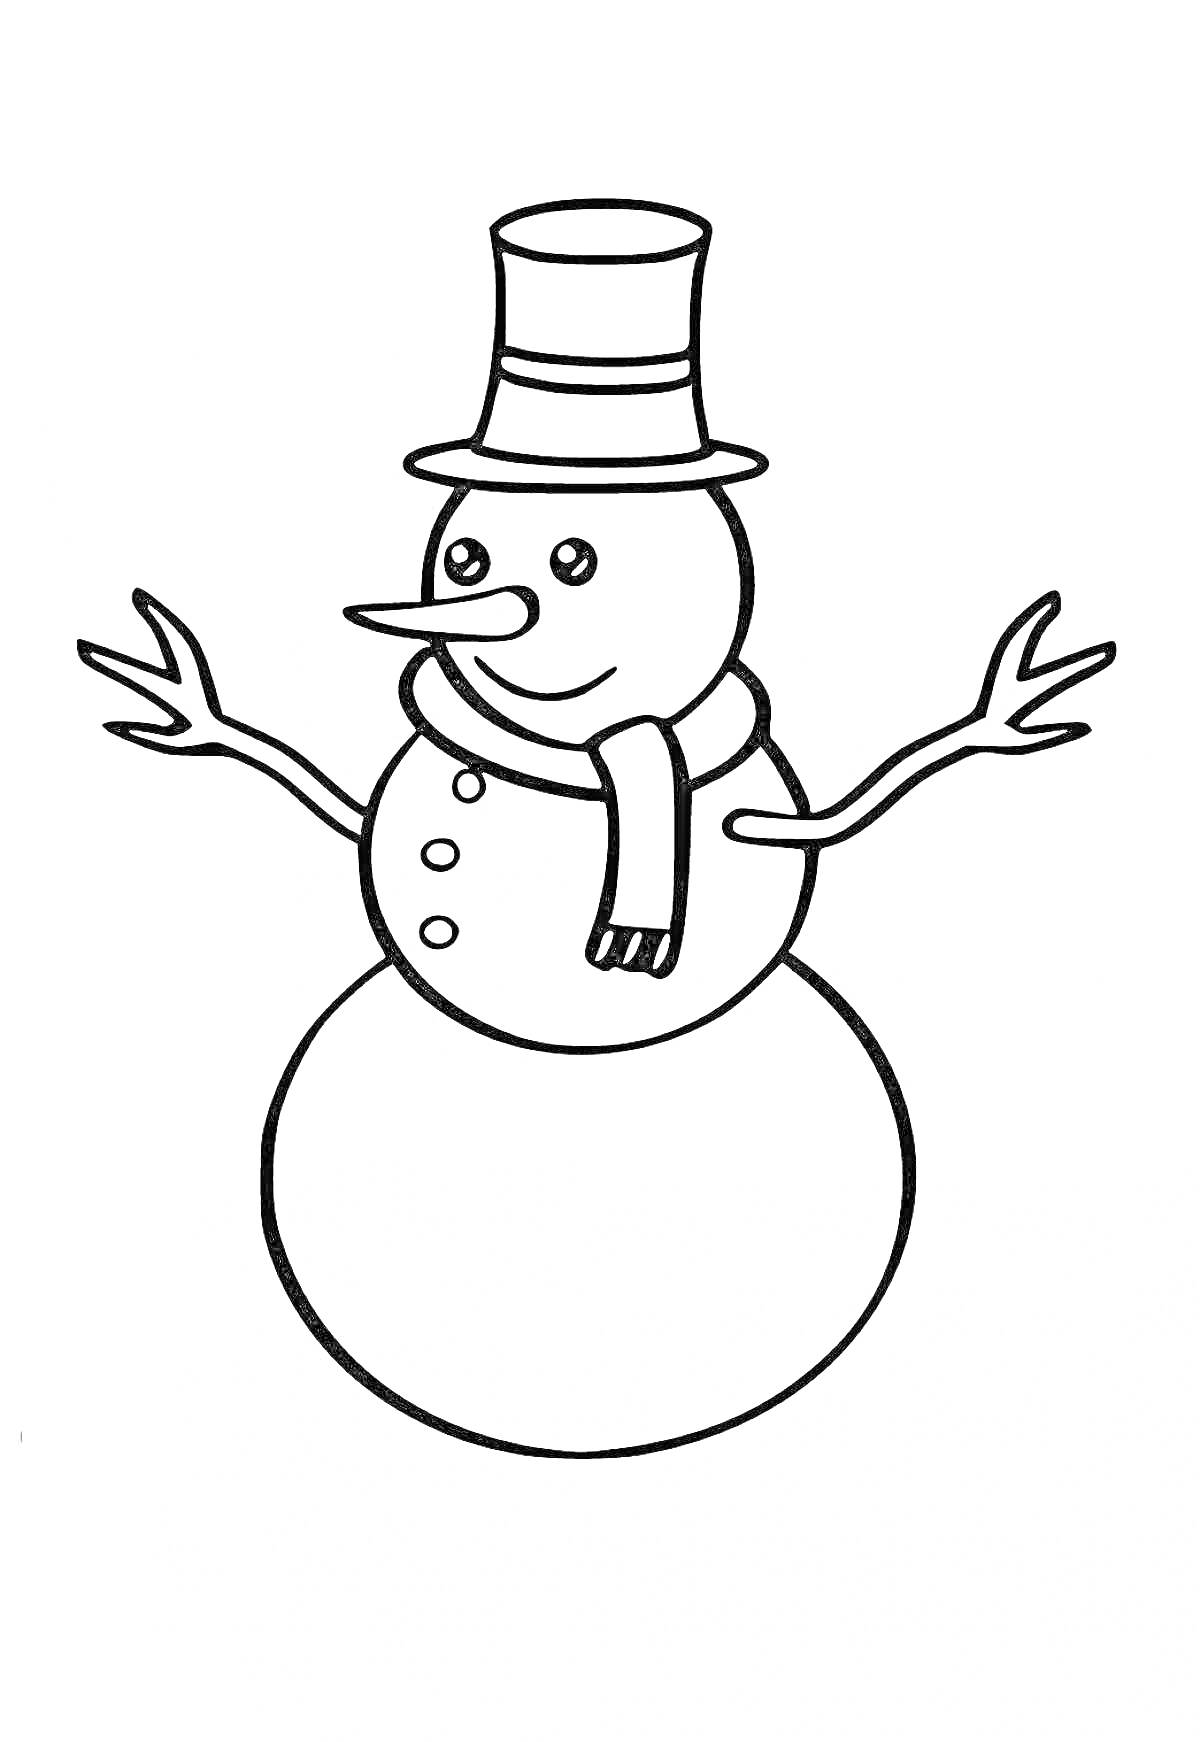 Раскраска Снеговик с цилиндром, носом-морковкой, шарфом и палками вместо рук